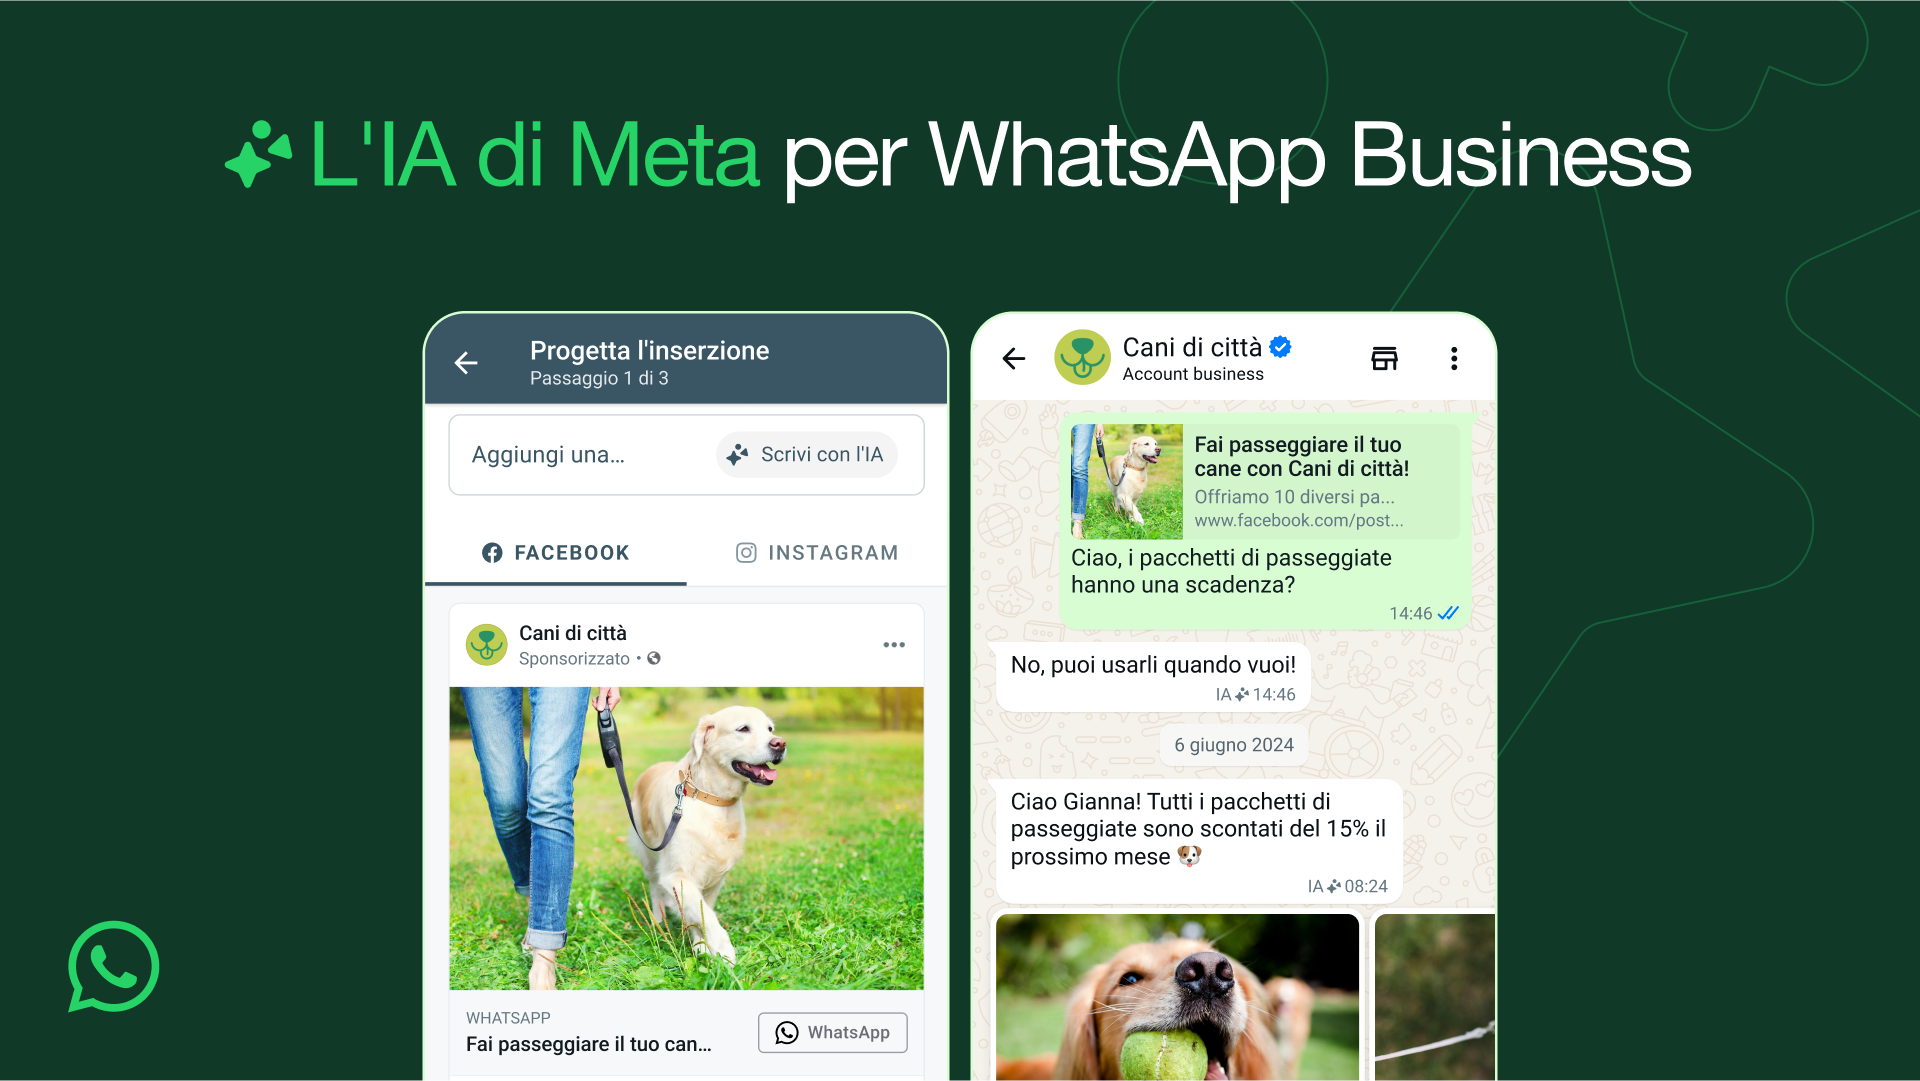 AI Whatsapp business